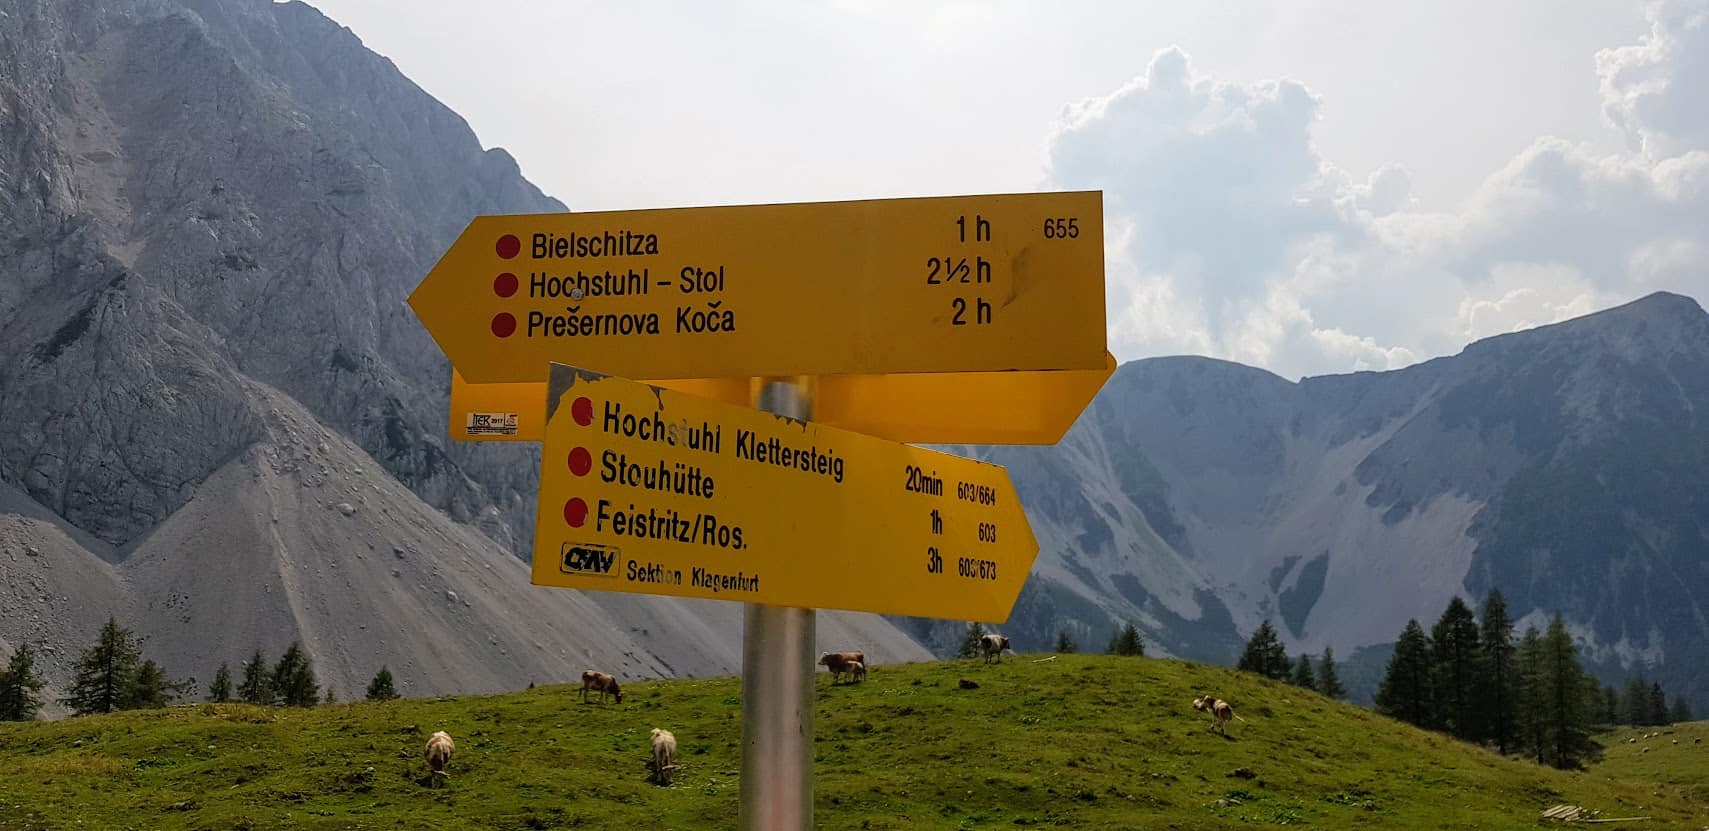 Aktivitäten im Rosental: Wandern und Klettern rund um die Klagenfurter Hütte in den Karawanken